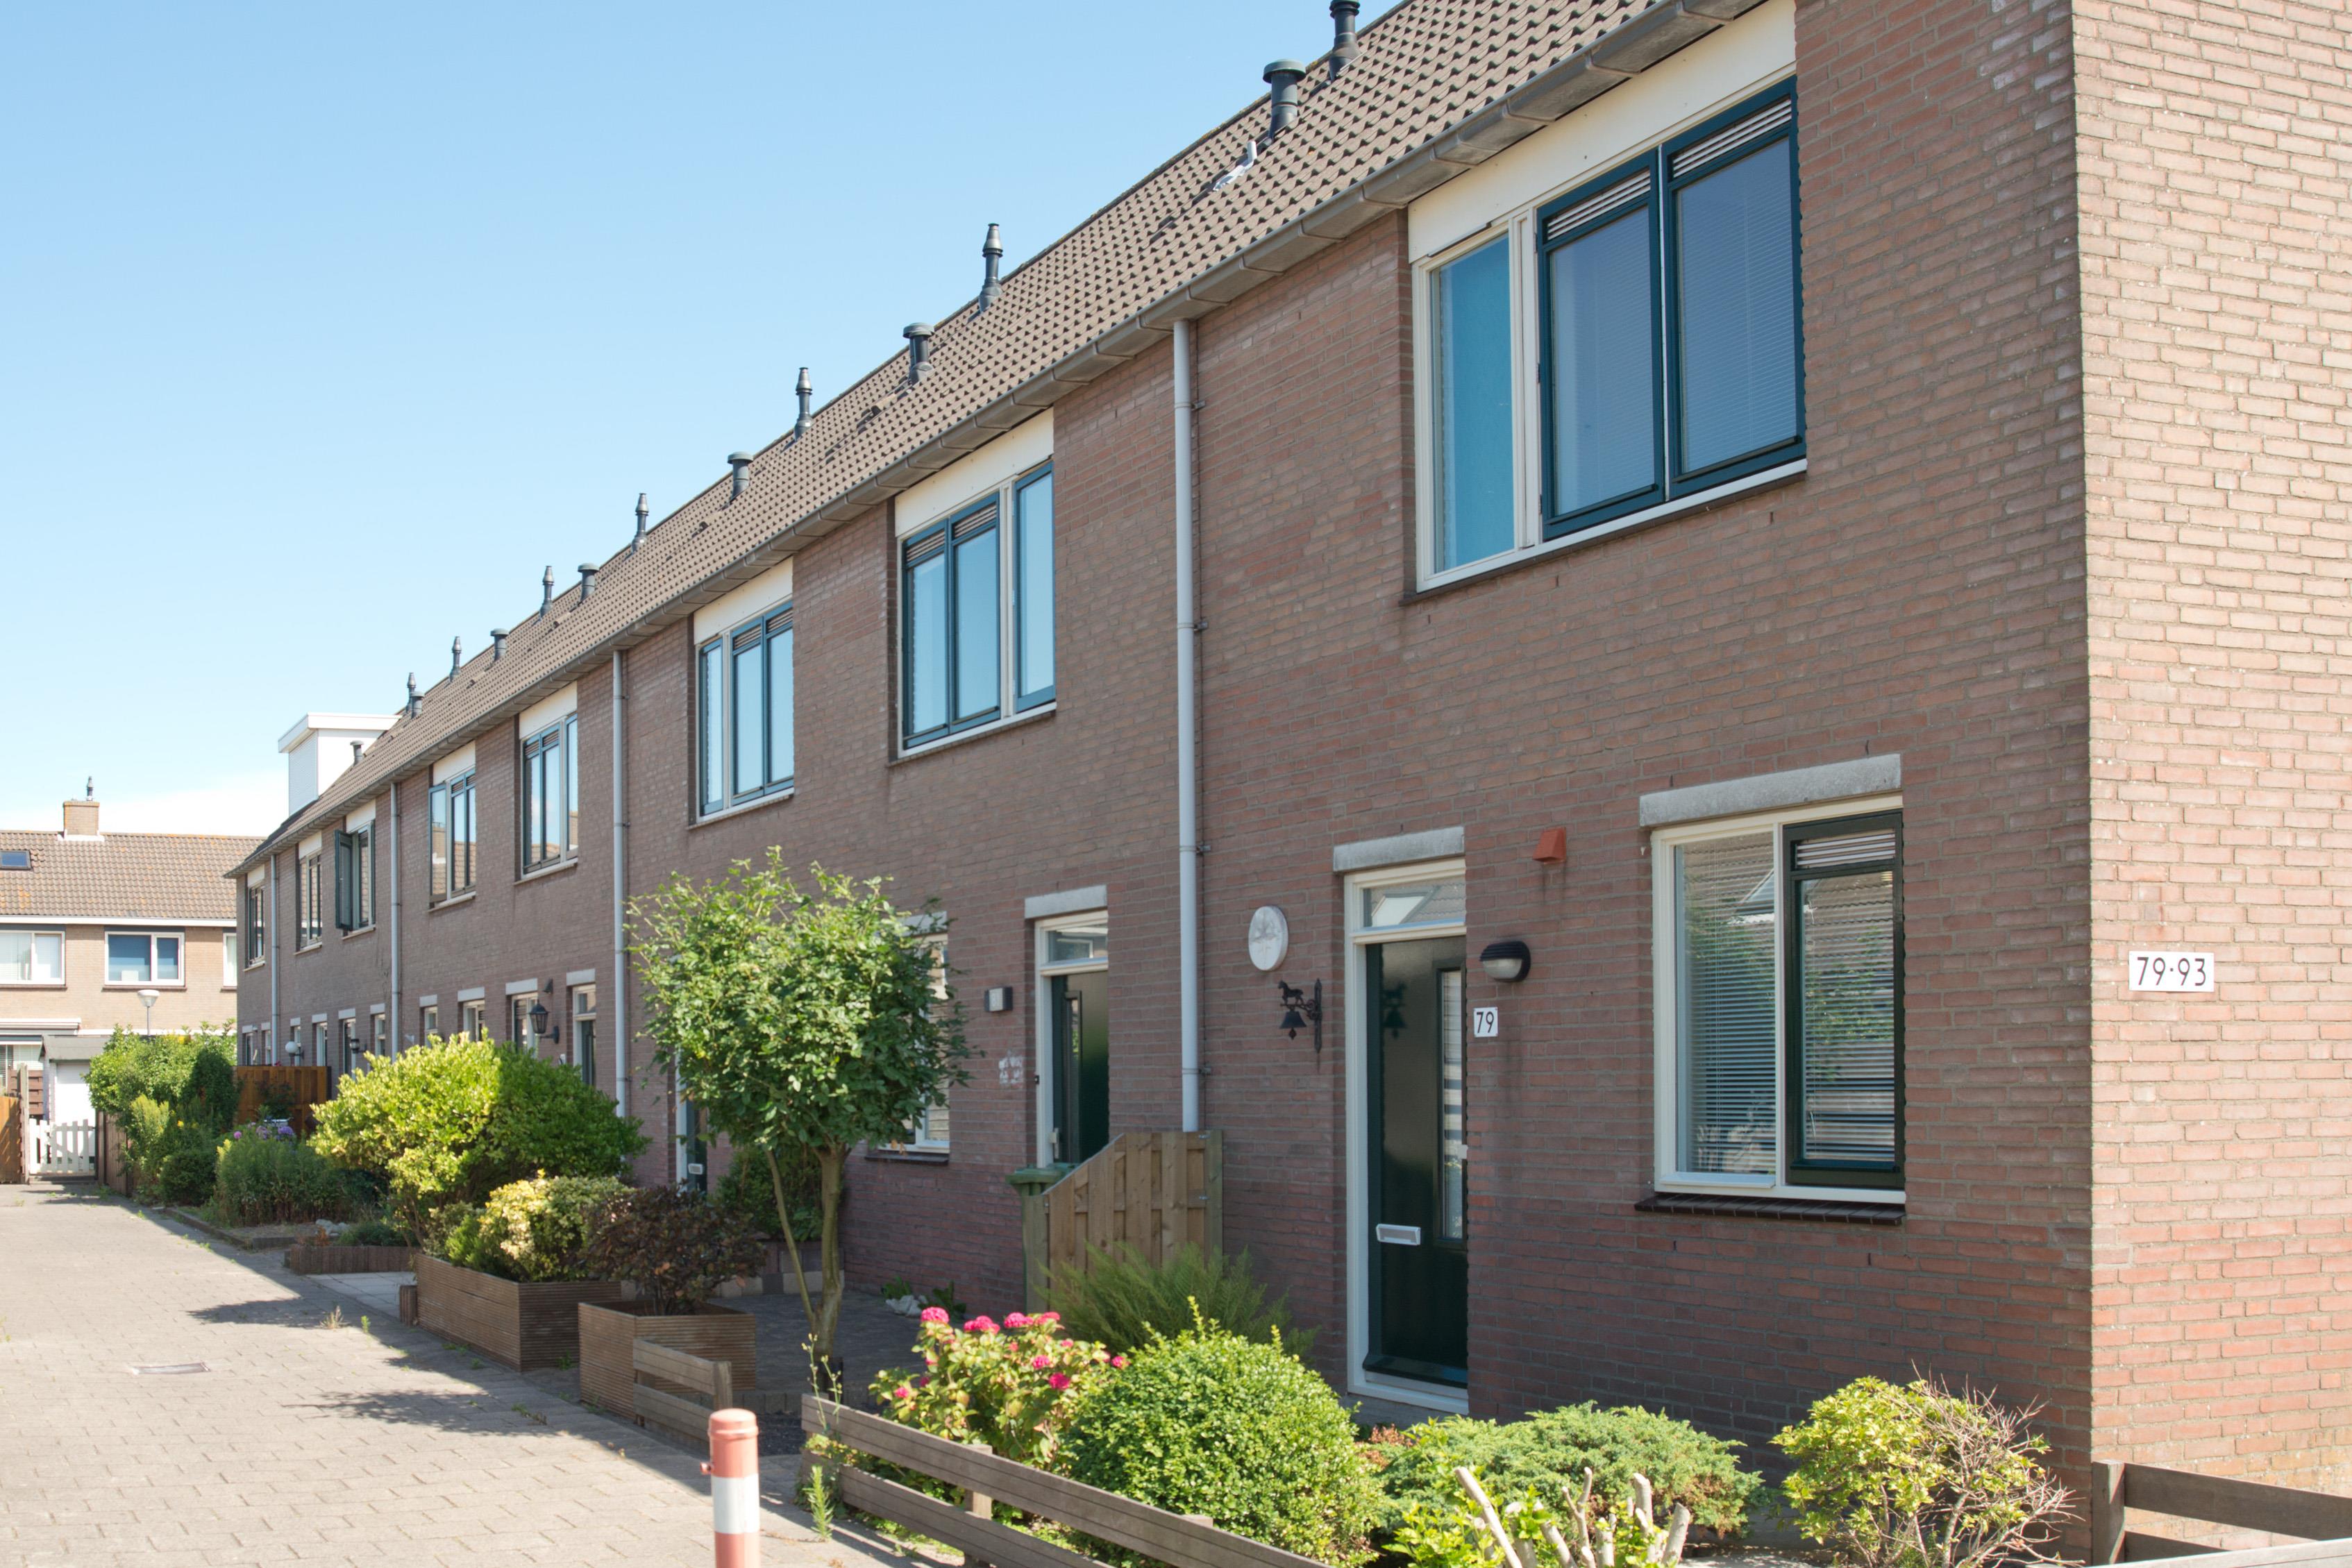 Willem Barentsstraat 83, 3151 WG Hoek van Holland, Nederland